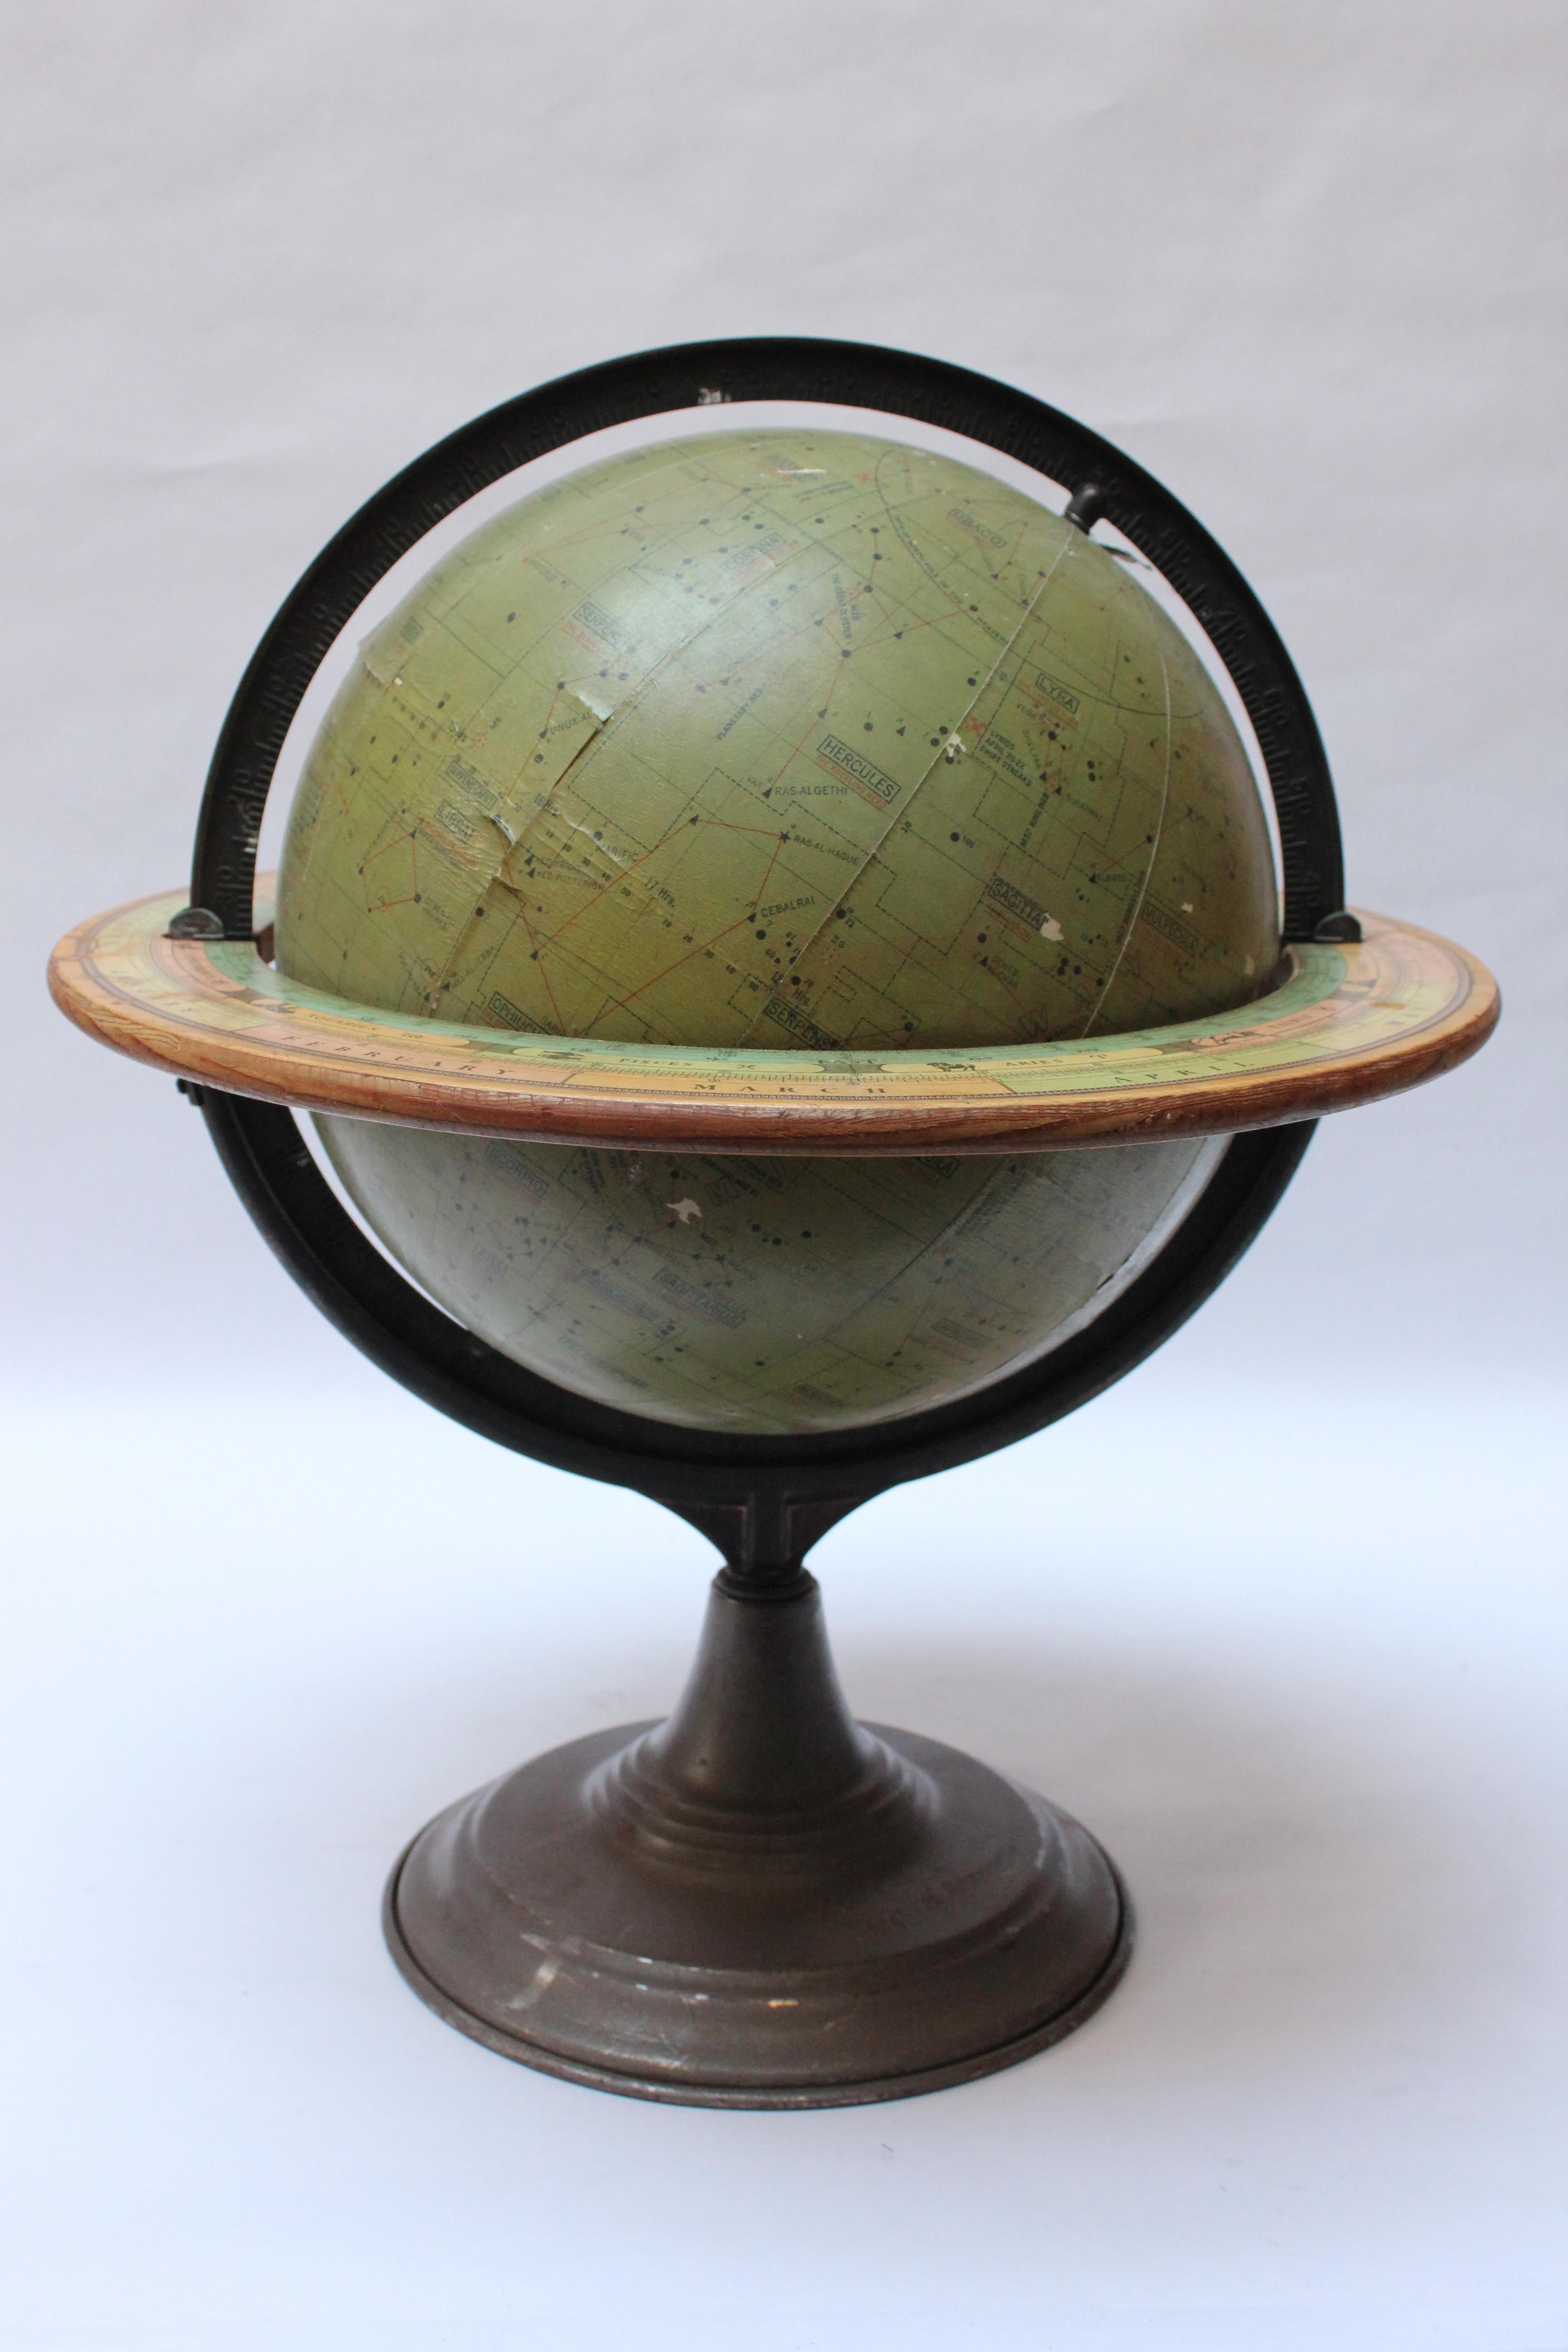 Dennoyer-Geppert Himmelsglobus, entworfen von Commander Stubbs RNR (Royal Navy) für astronomische Demonstrationszwecke im Klassenzimmer (ca. 1930, Chicago, IL.). Bestehend aus olivgrünen Papierstreifen auf einem hohlen Metallkern, mit einem